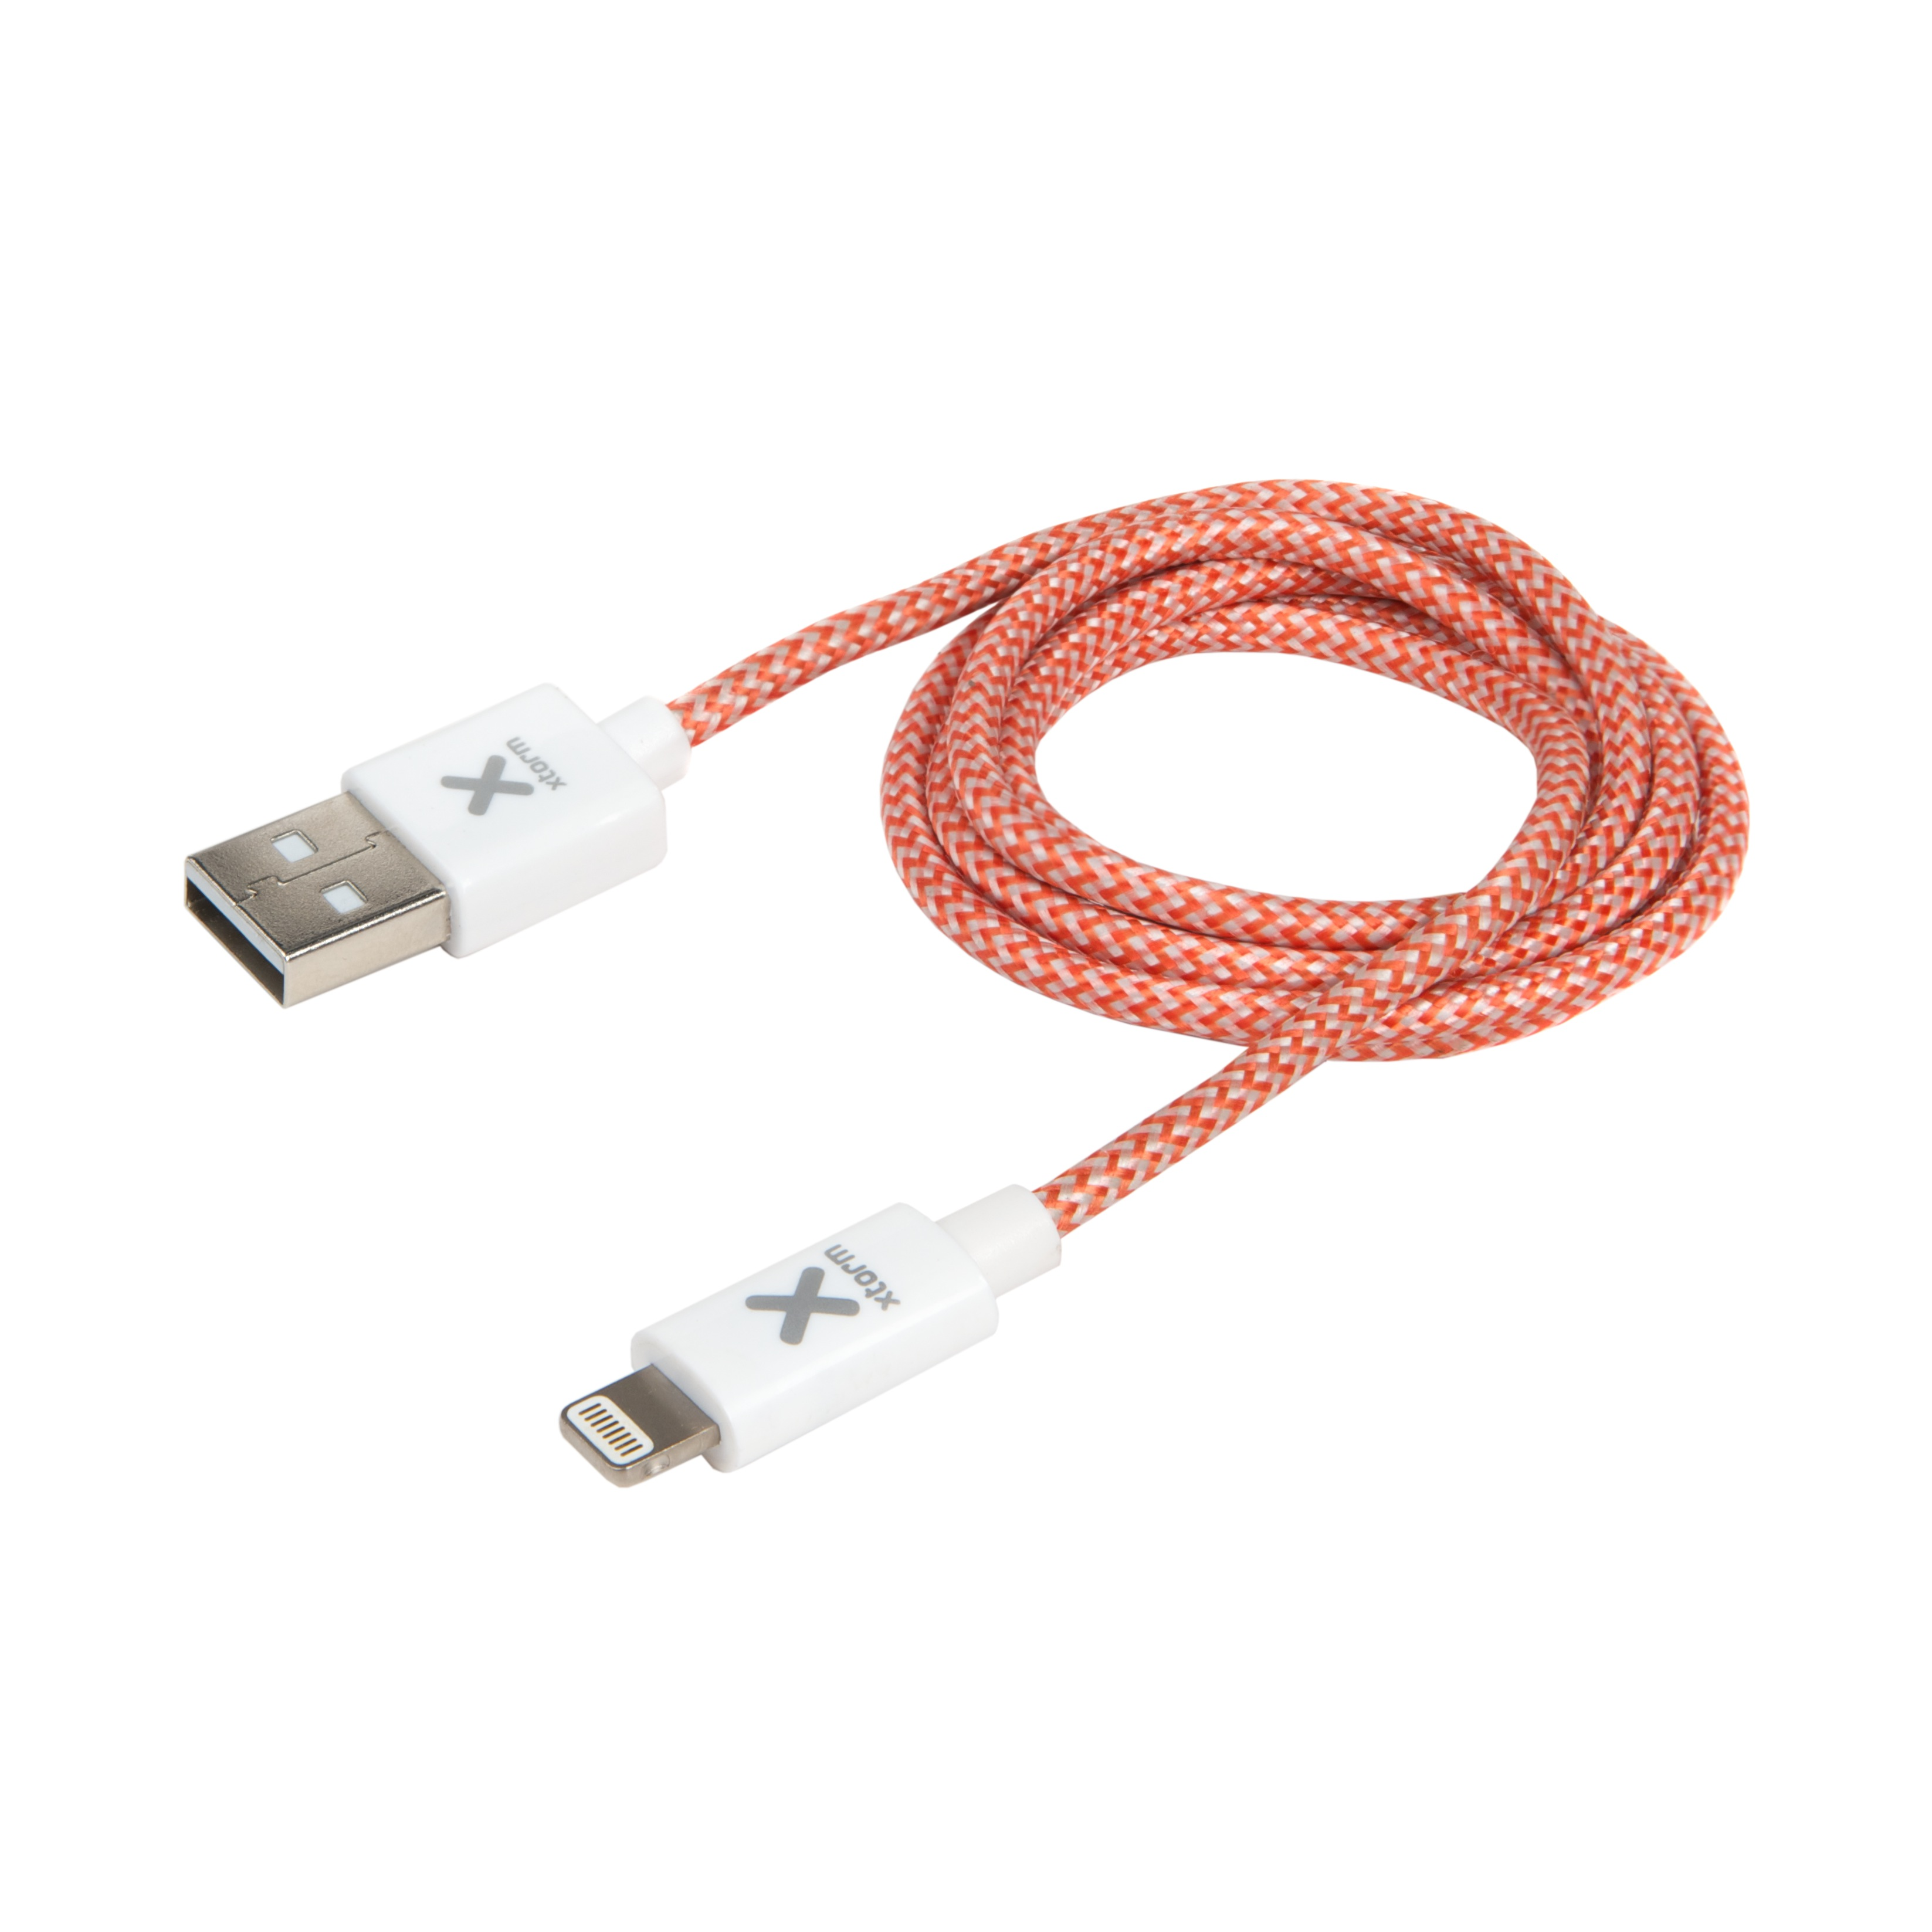 XTORM Original Kabel USB Cable Series